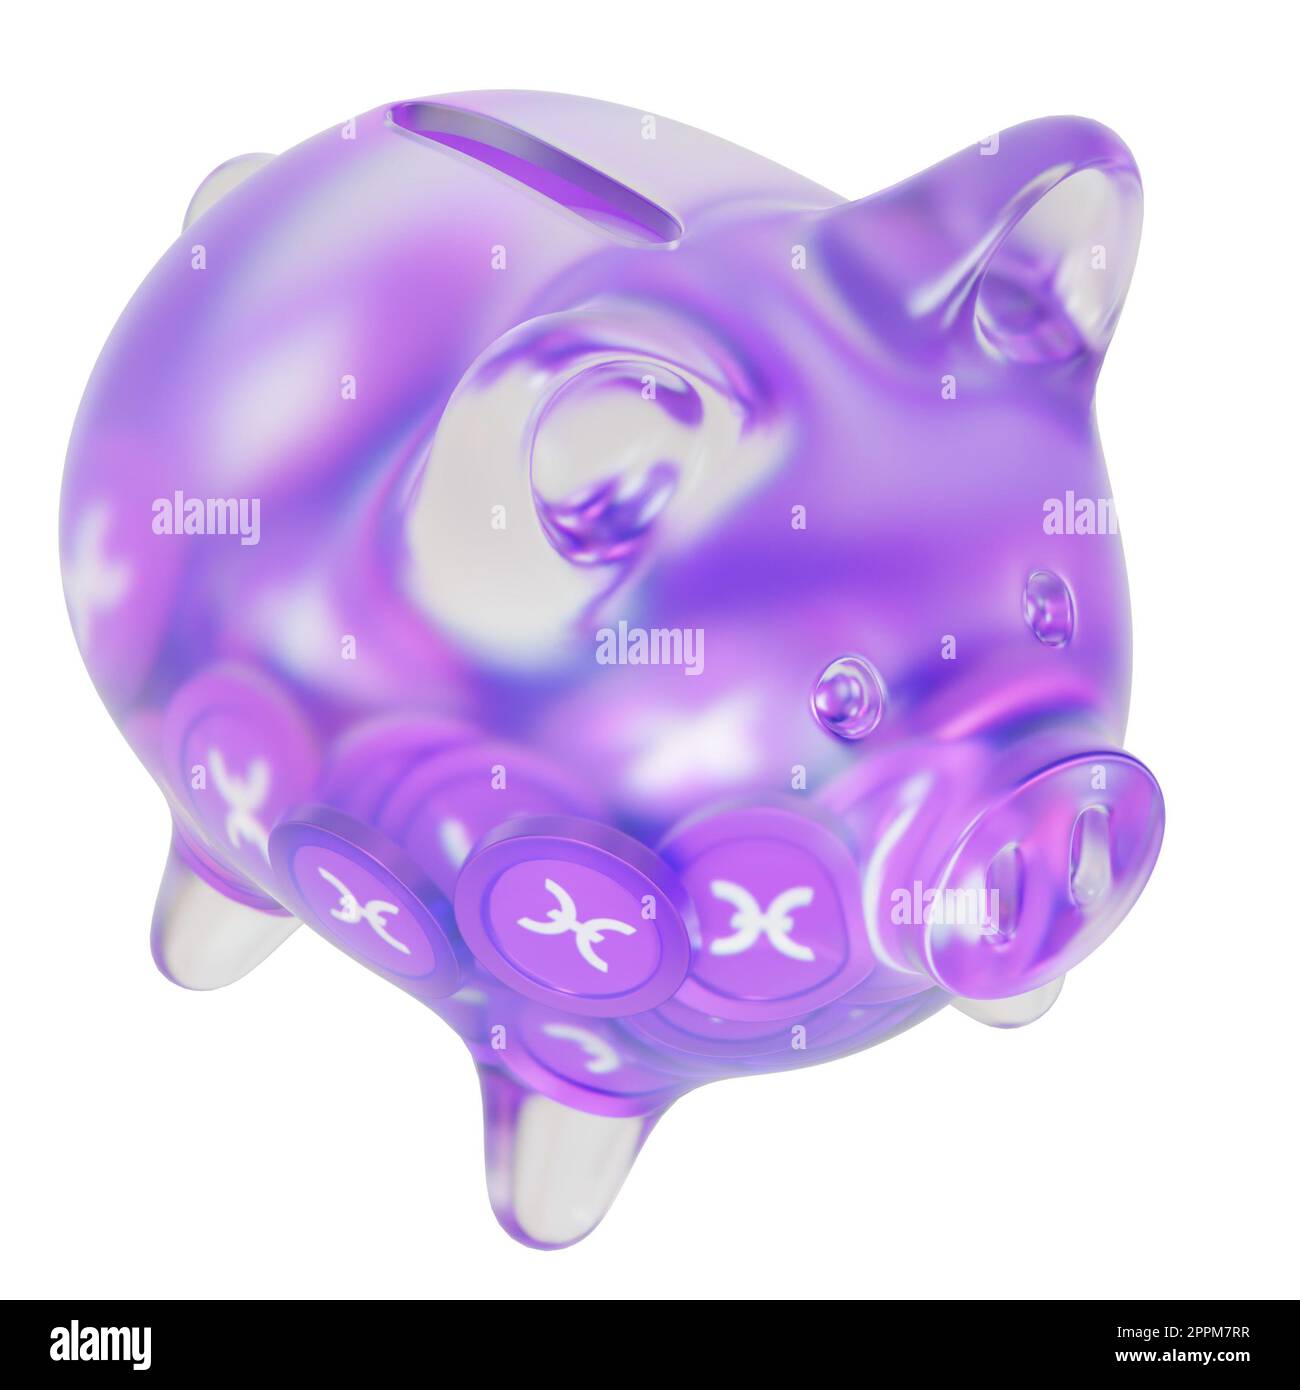 Holo (HEISSES) Sparschwein aus Klarglas mit abnehmenden Haufen Krypto-Münzen. Das Konzept der Inflation, Finanzkrise und des Verlusts von Geld zu retten. 3D Abbildung Stockfoto